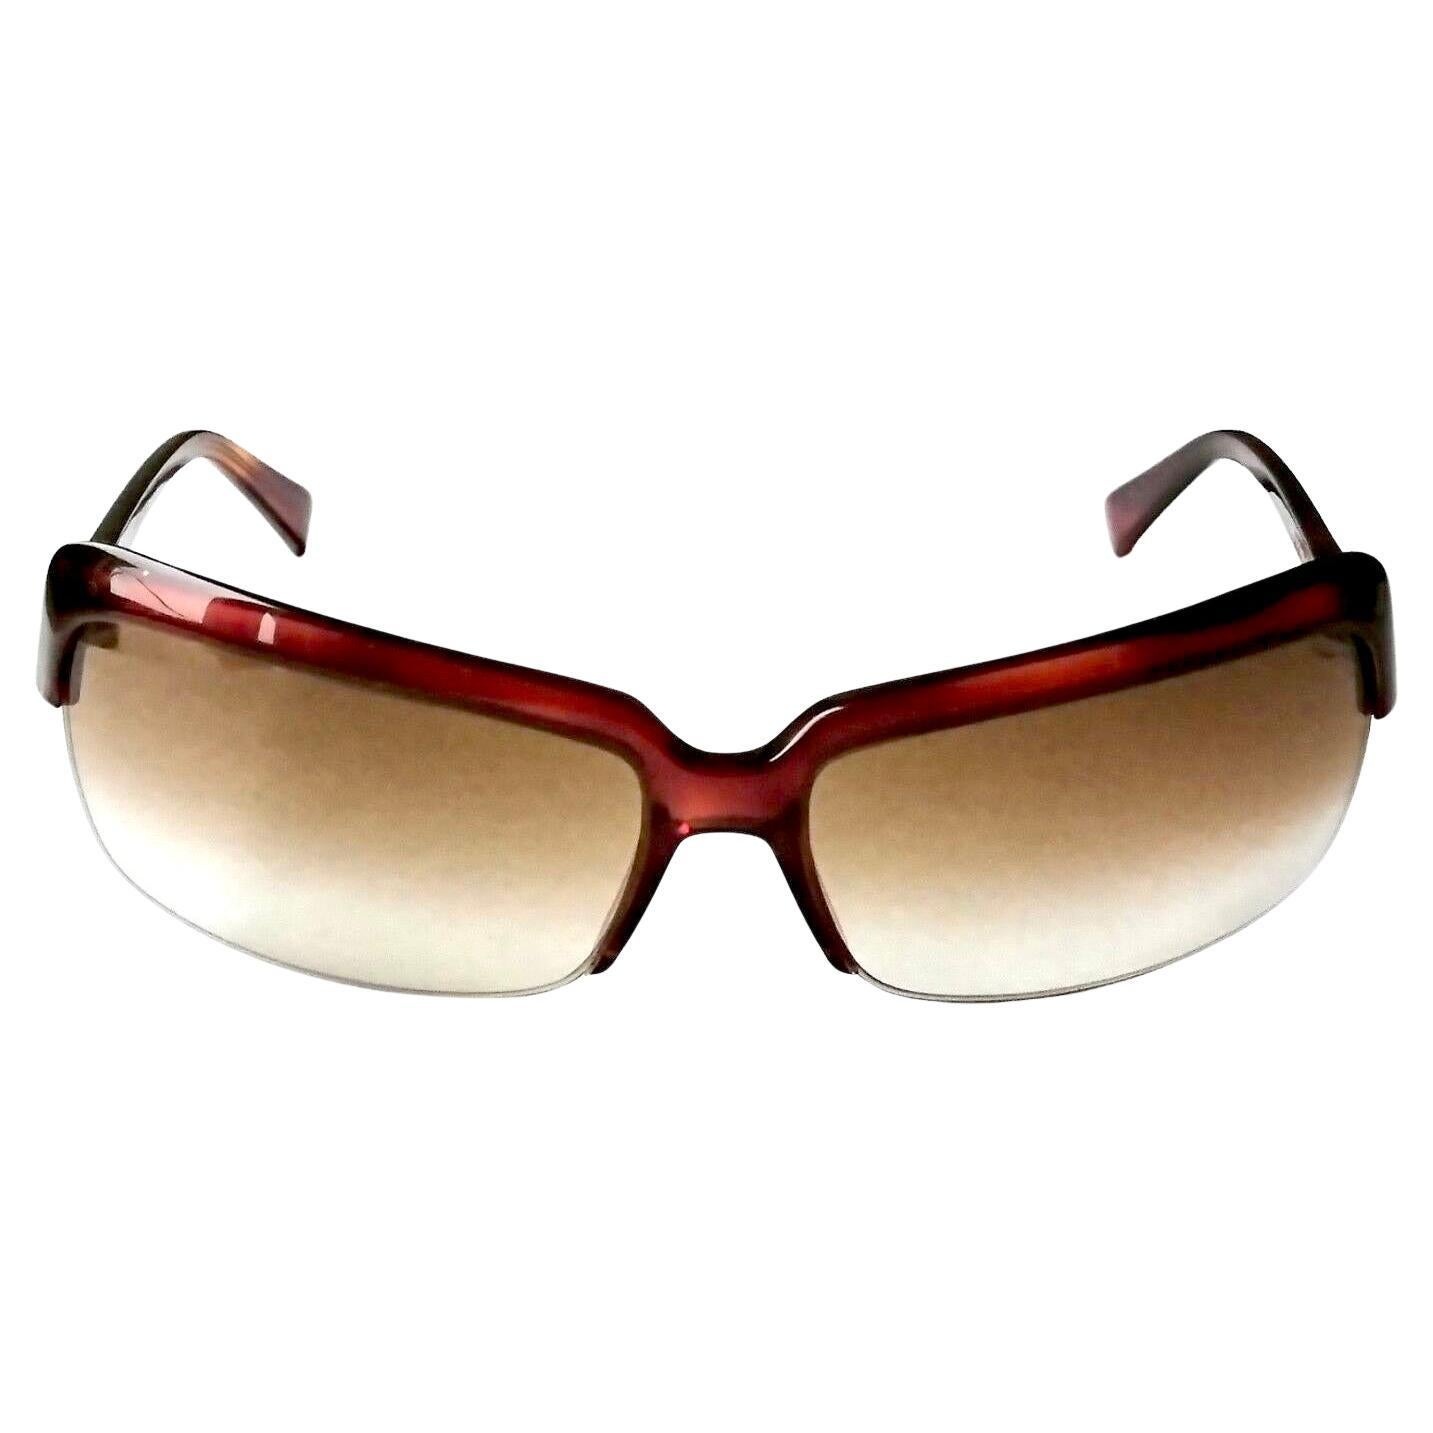 La Perla New sunglasses art. 063M col. 0710 